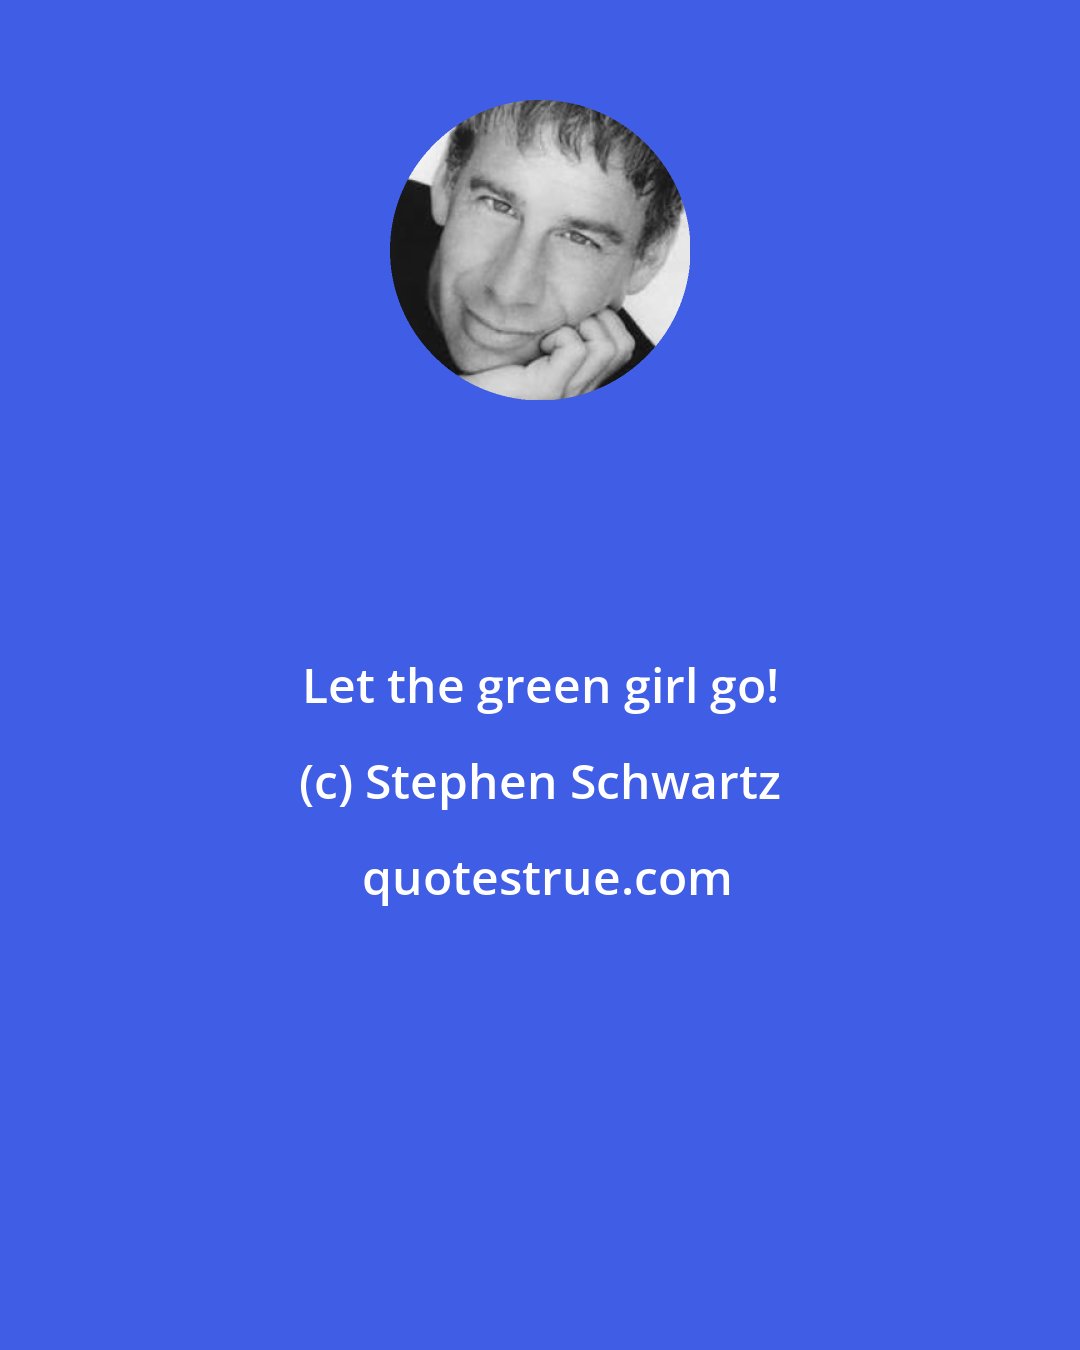 Stephen Schwartz: Let the green girl go!